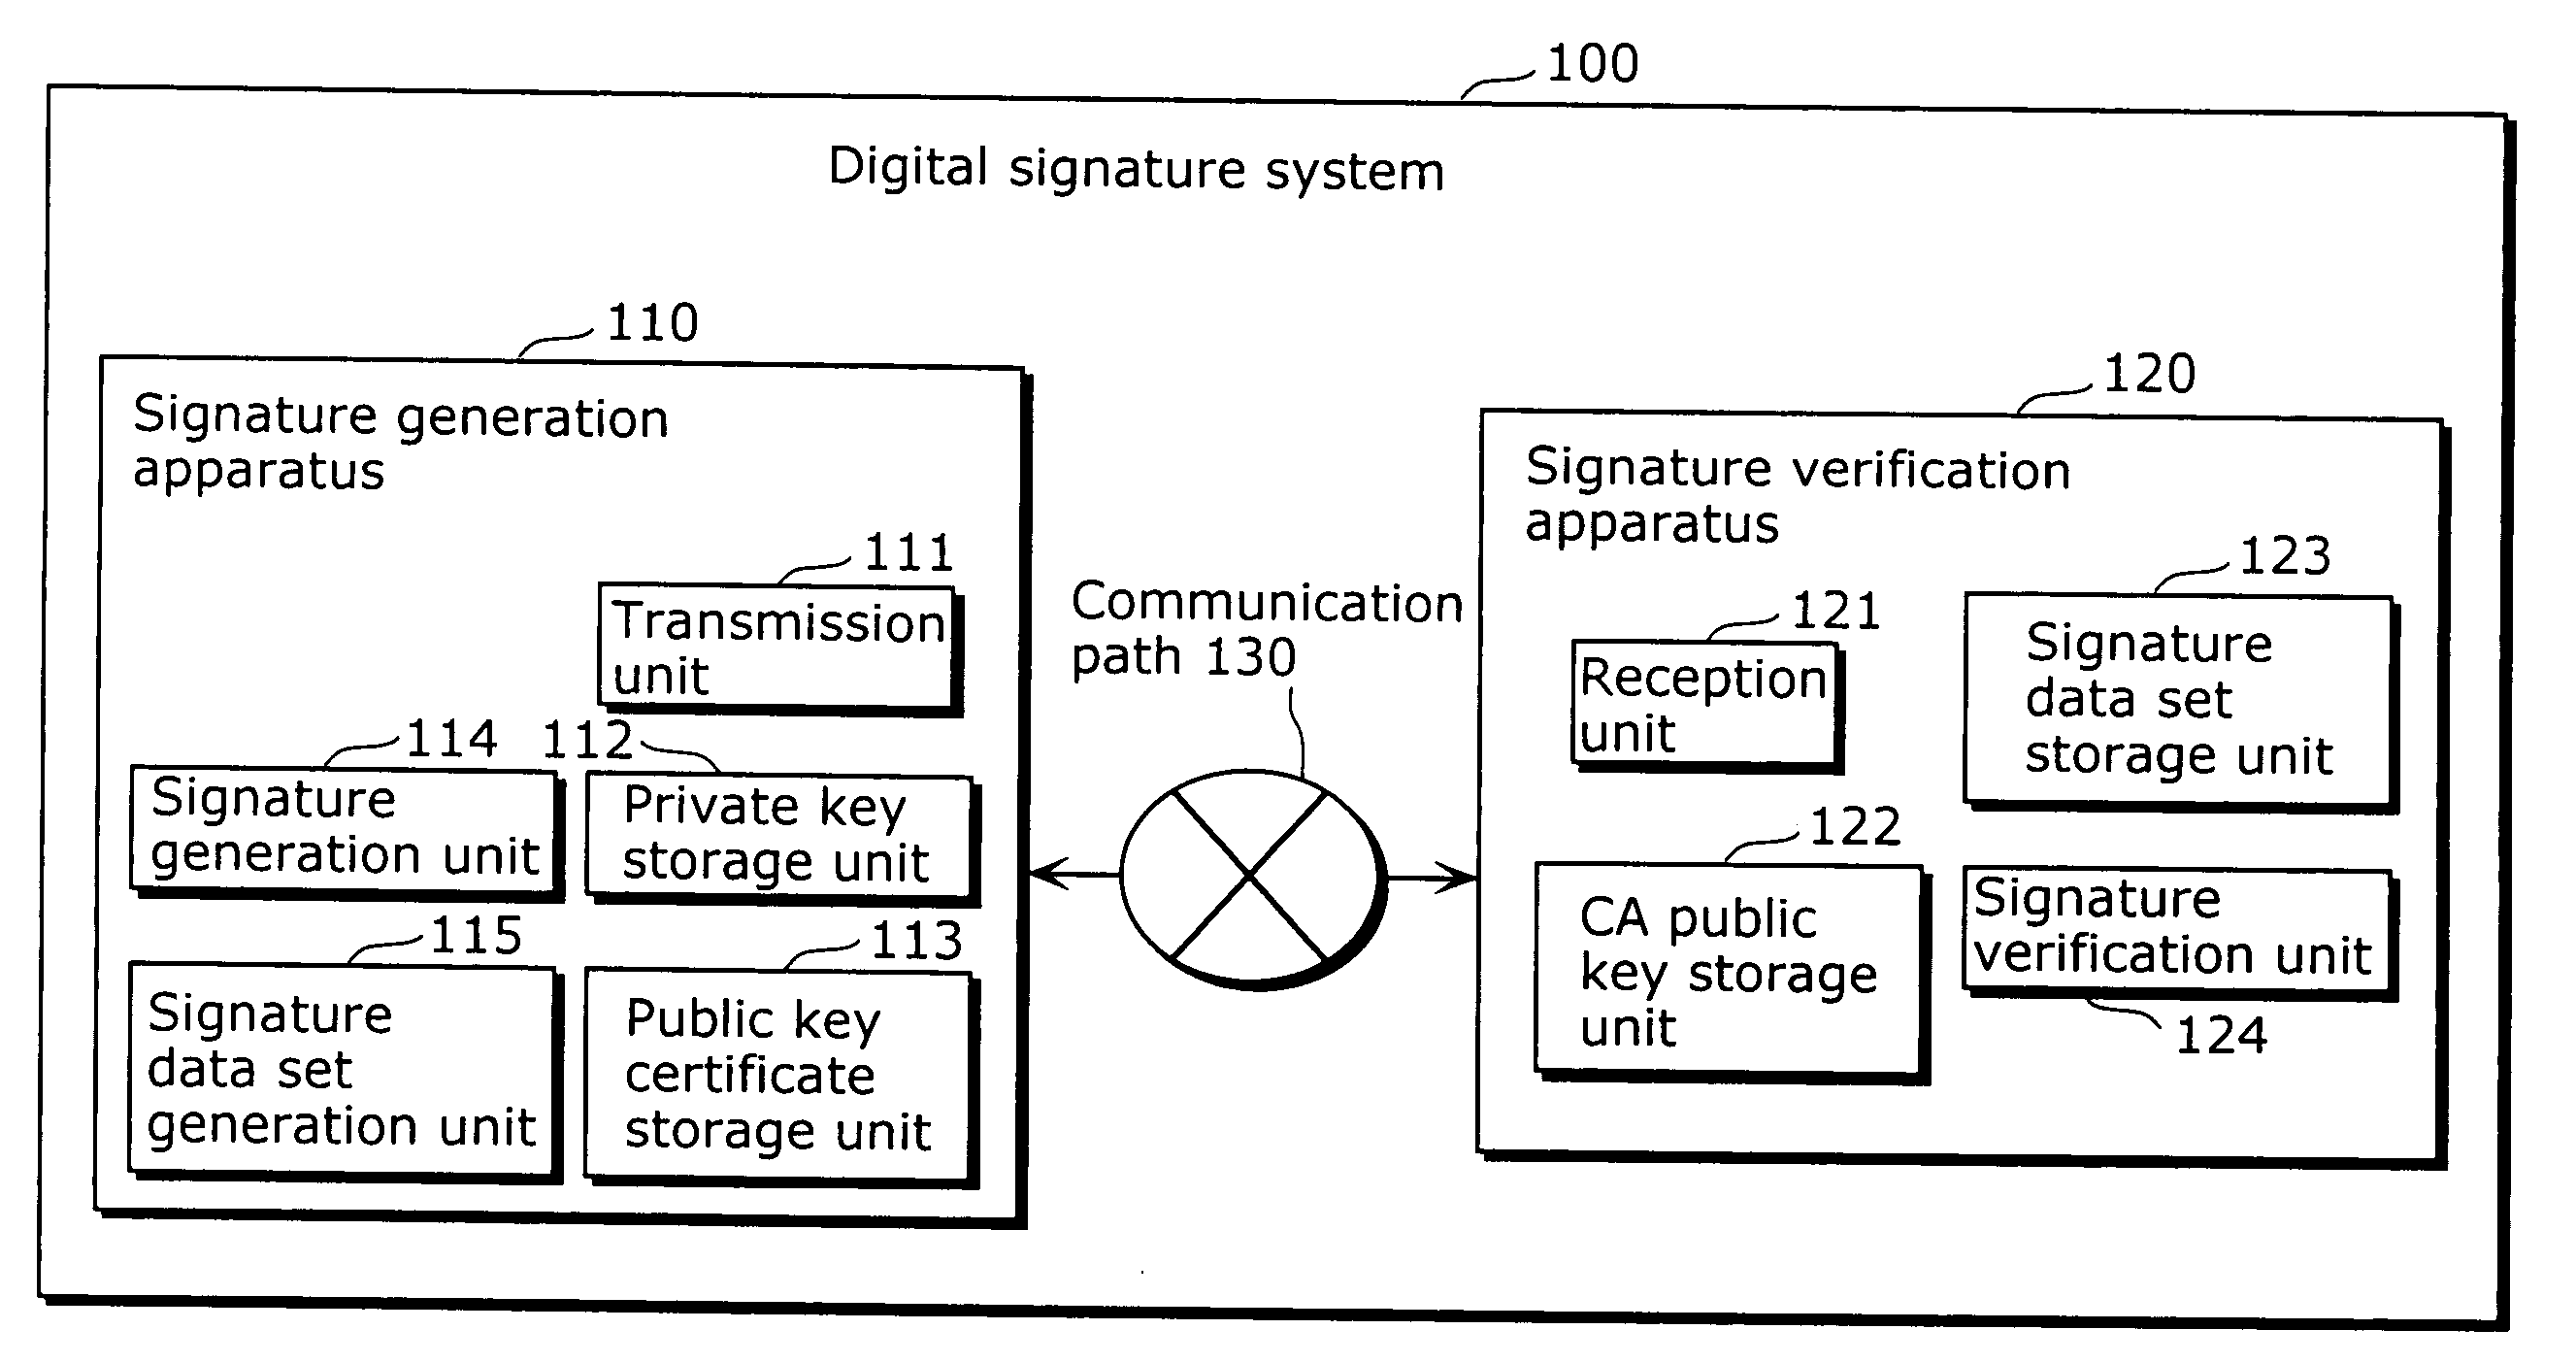 Signature generation apparatus and signature verification apparatus